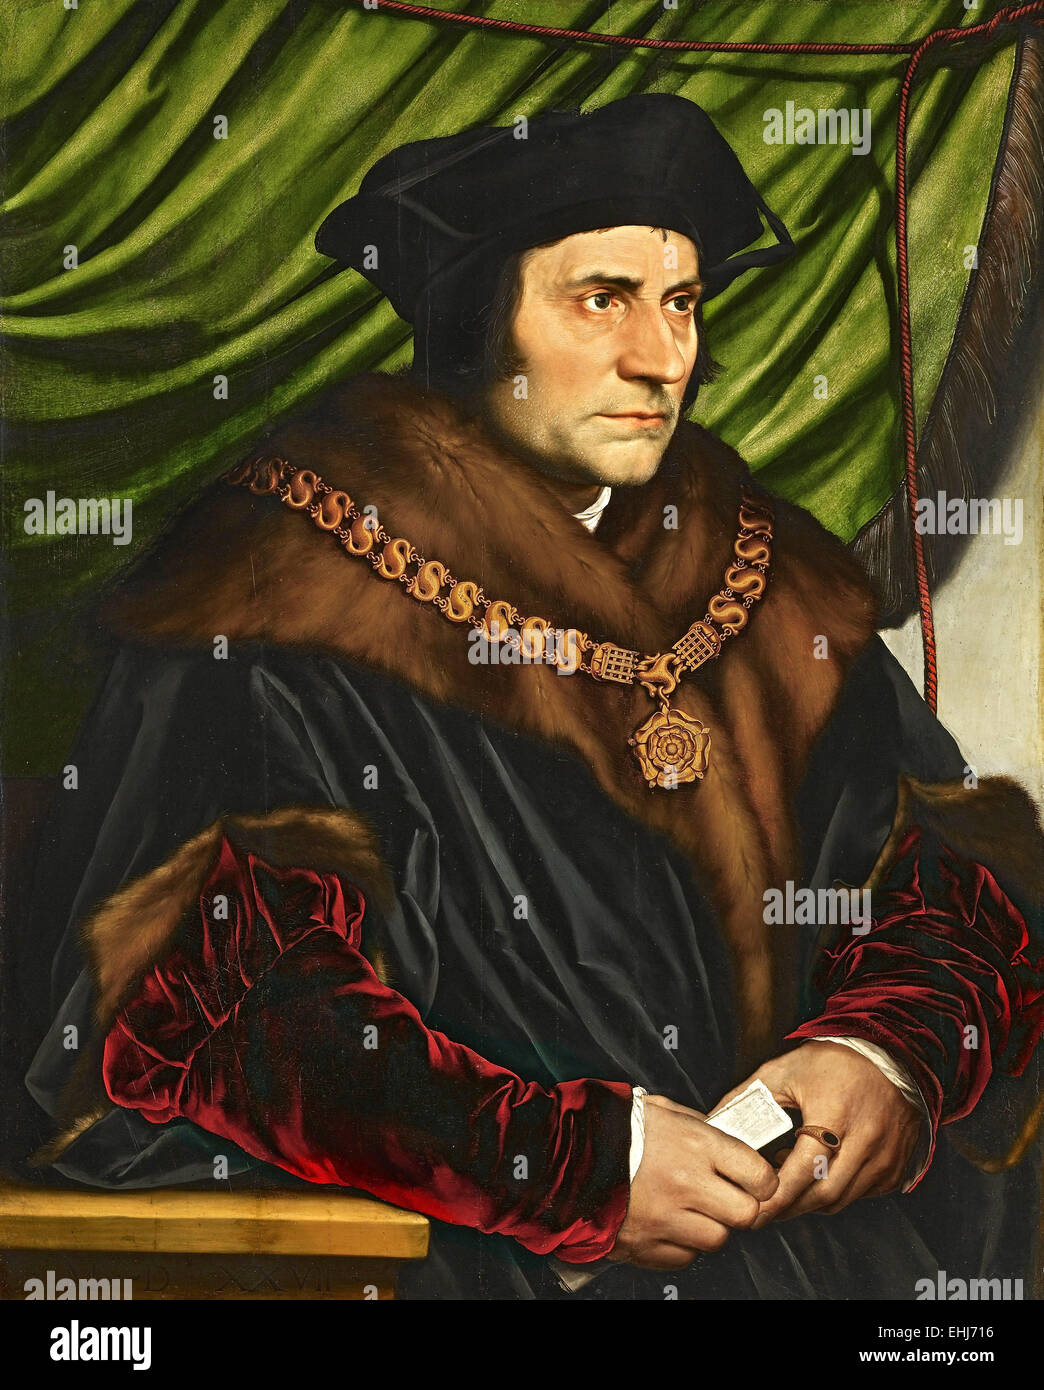 Sir Thomas More, avvocato inglese, filosofo sociale, autore, statista e notato umanista rinascimentale. Foto Stock